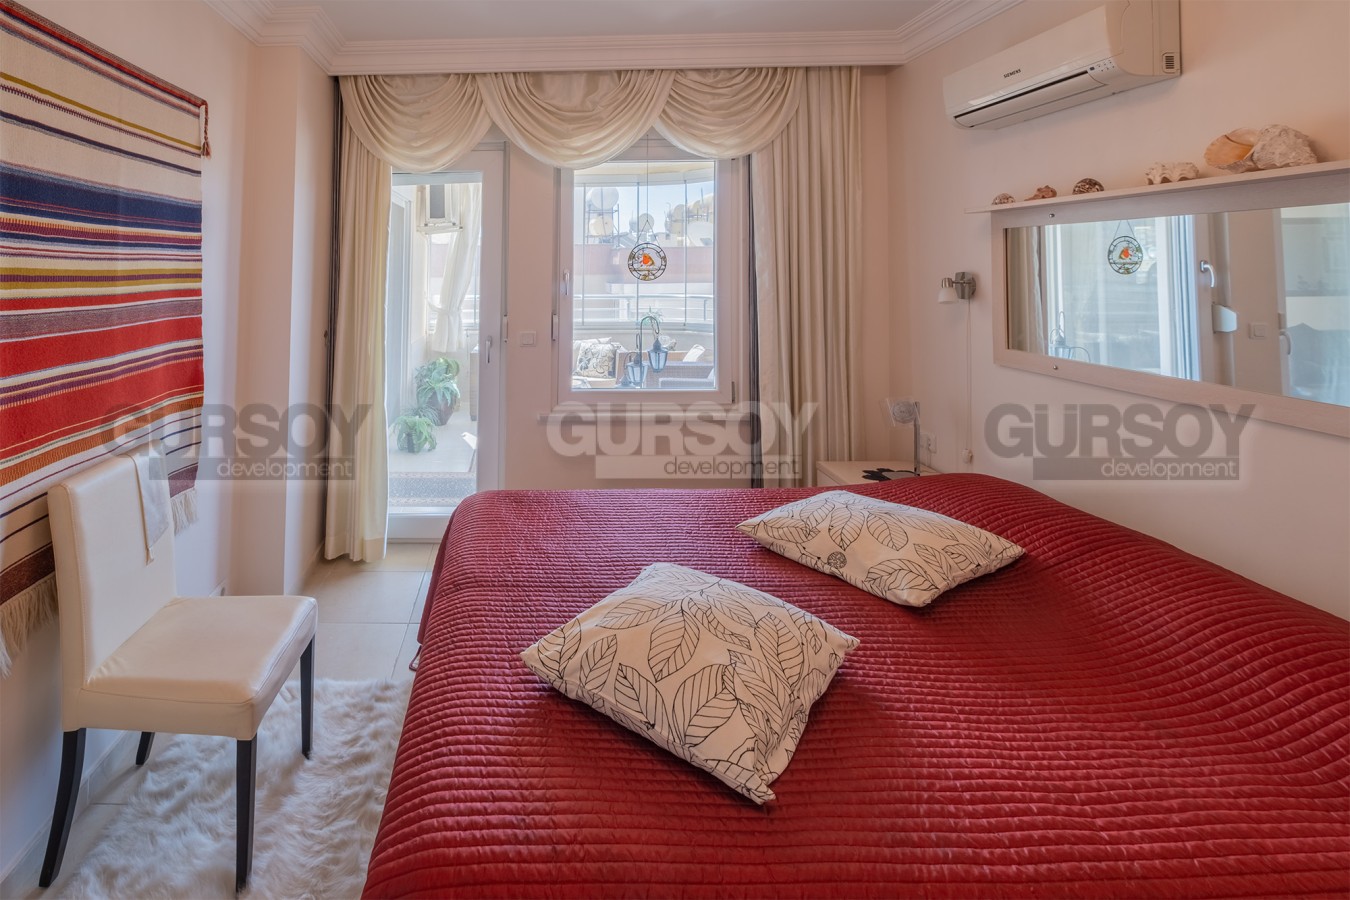 Квартира планировкой 2+1, общей площадью 120 м2, с прямым видом на море в центре города Алании в Турции - фото 1